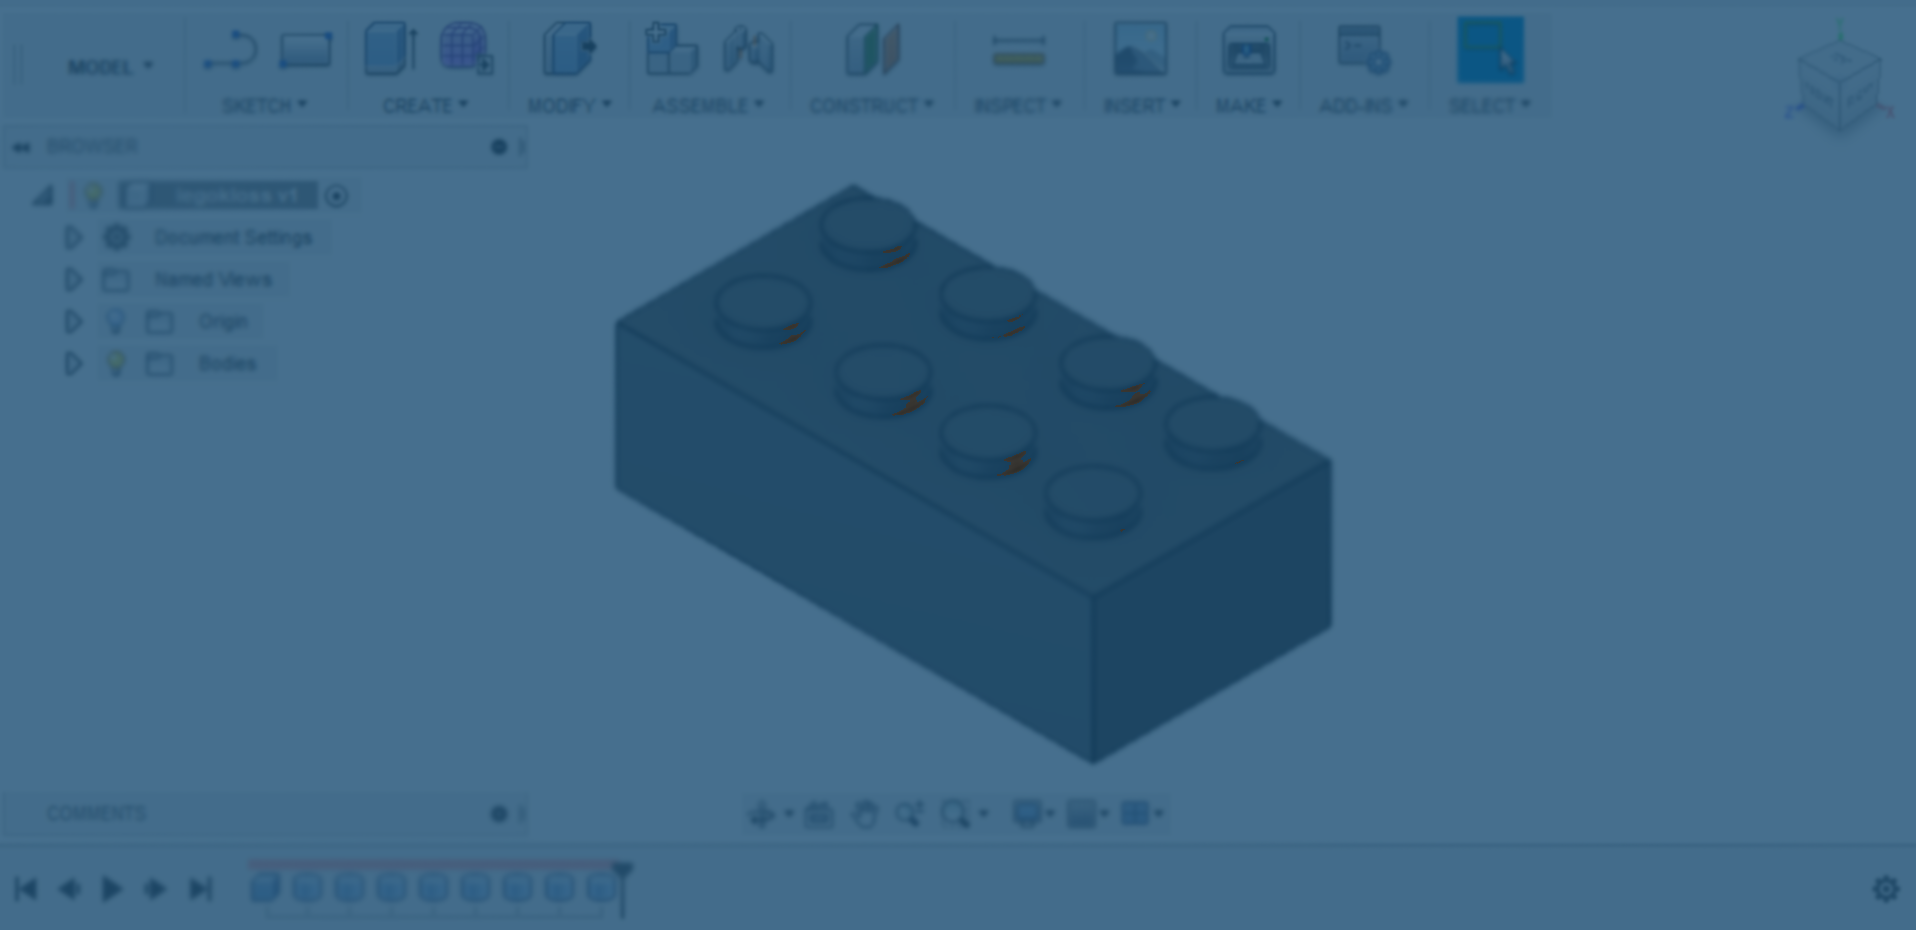 Et skjermbilde av en 3D-modellert legokloss i 3D-modelleringsprogrammet Fusion 360